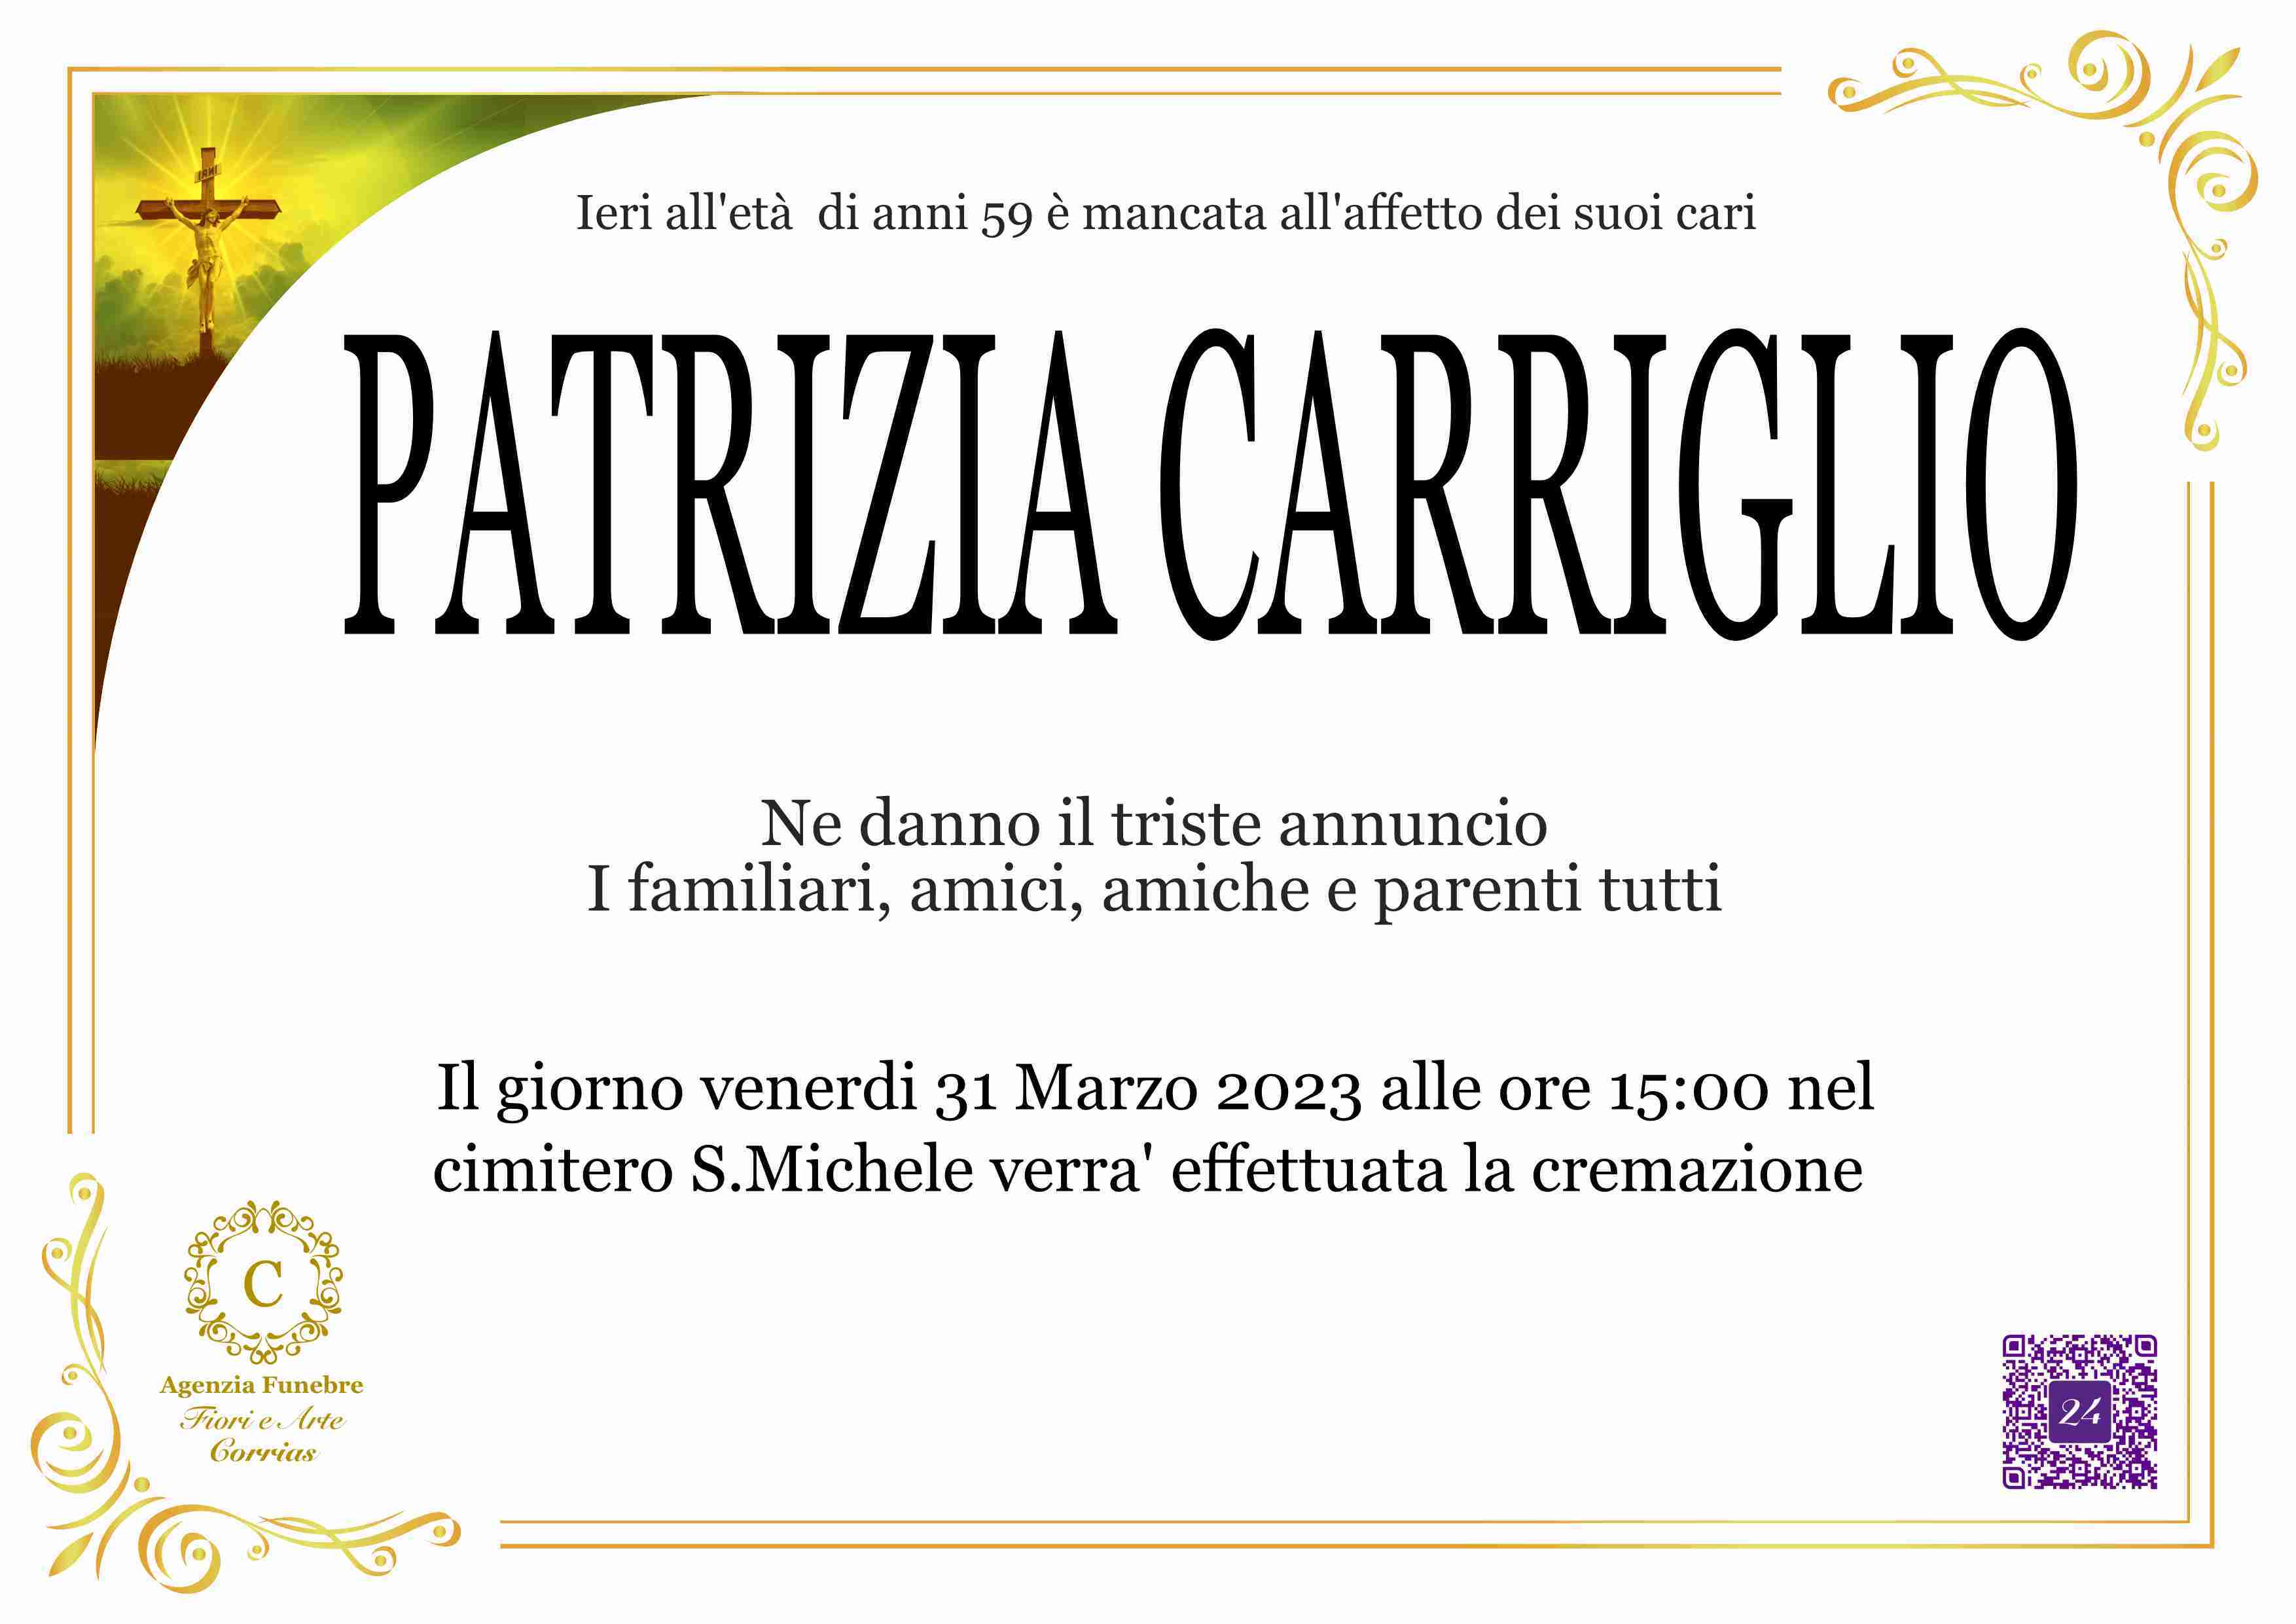 Patrizia Carriglio